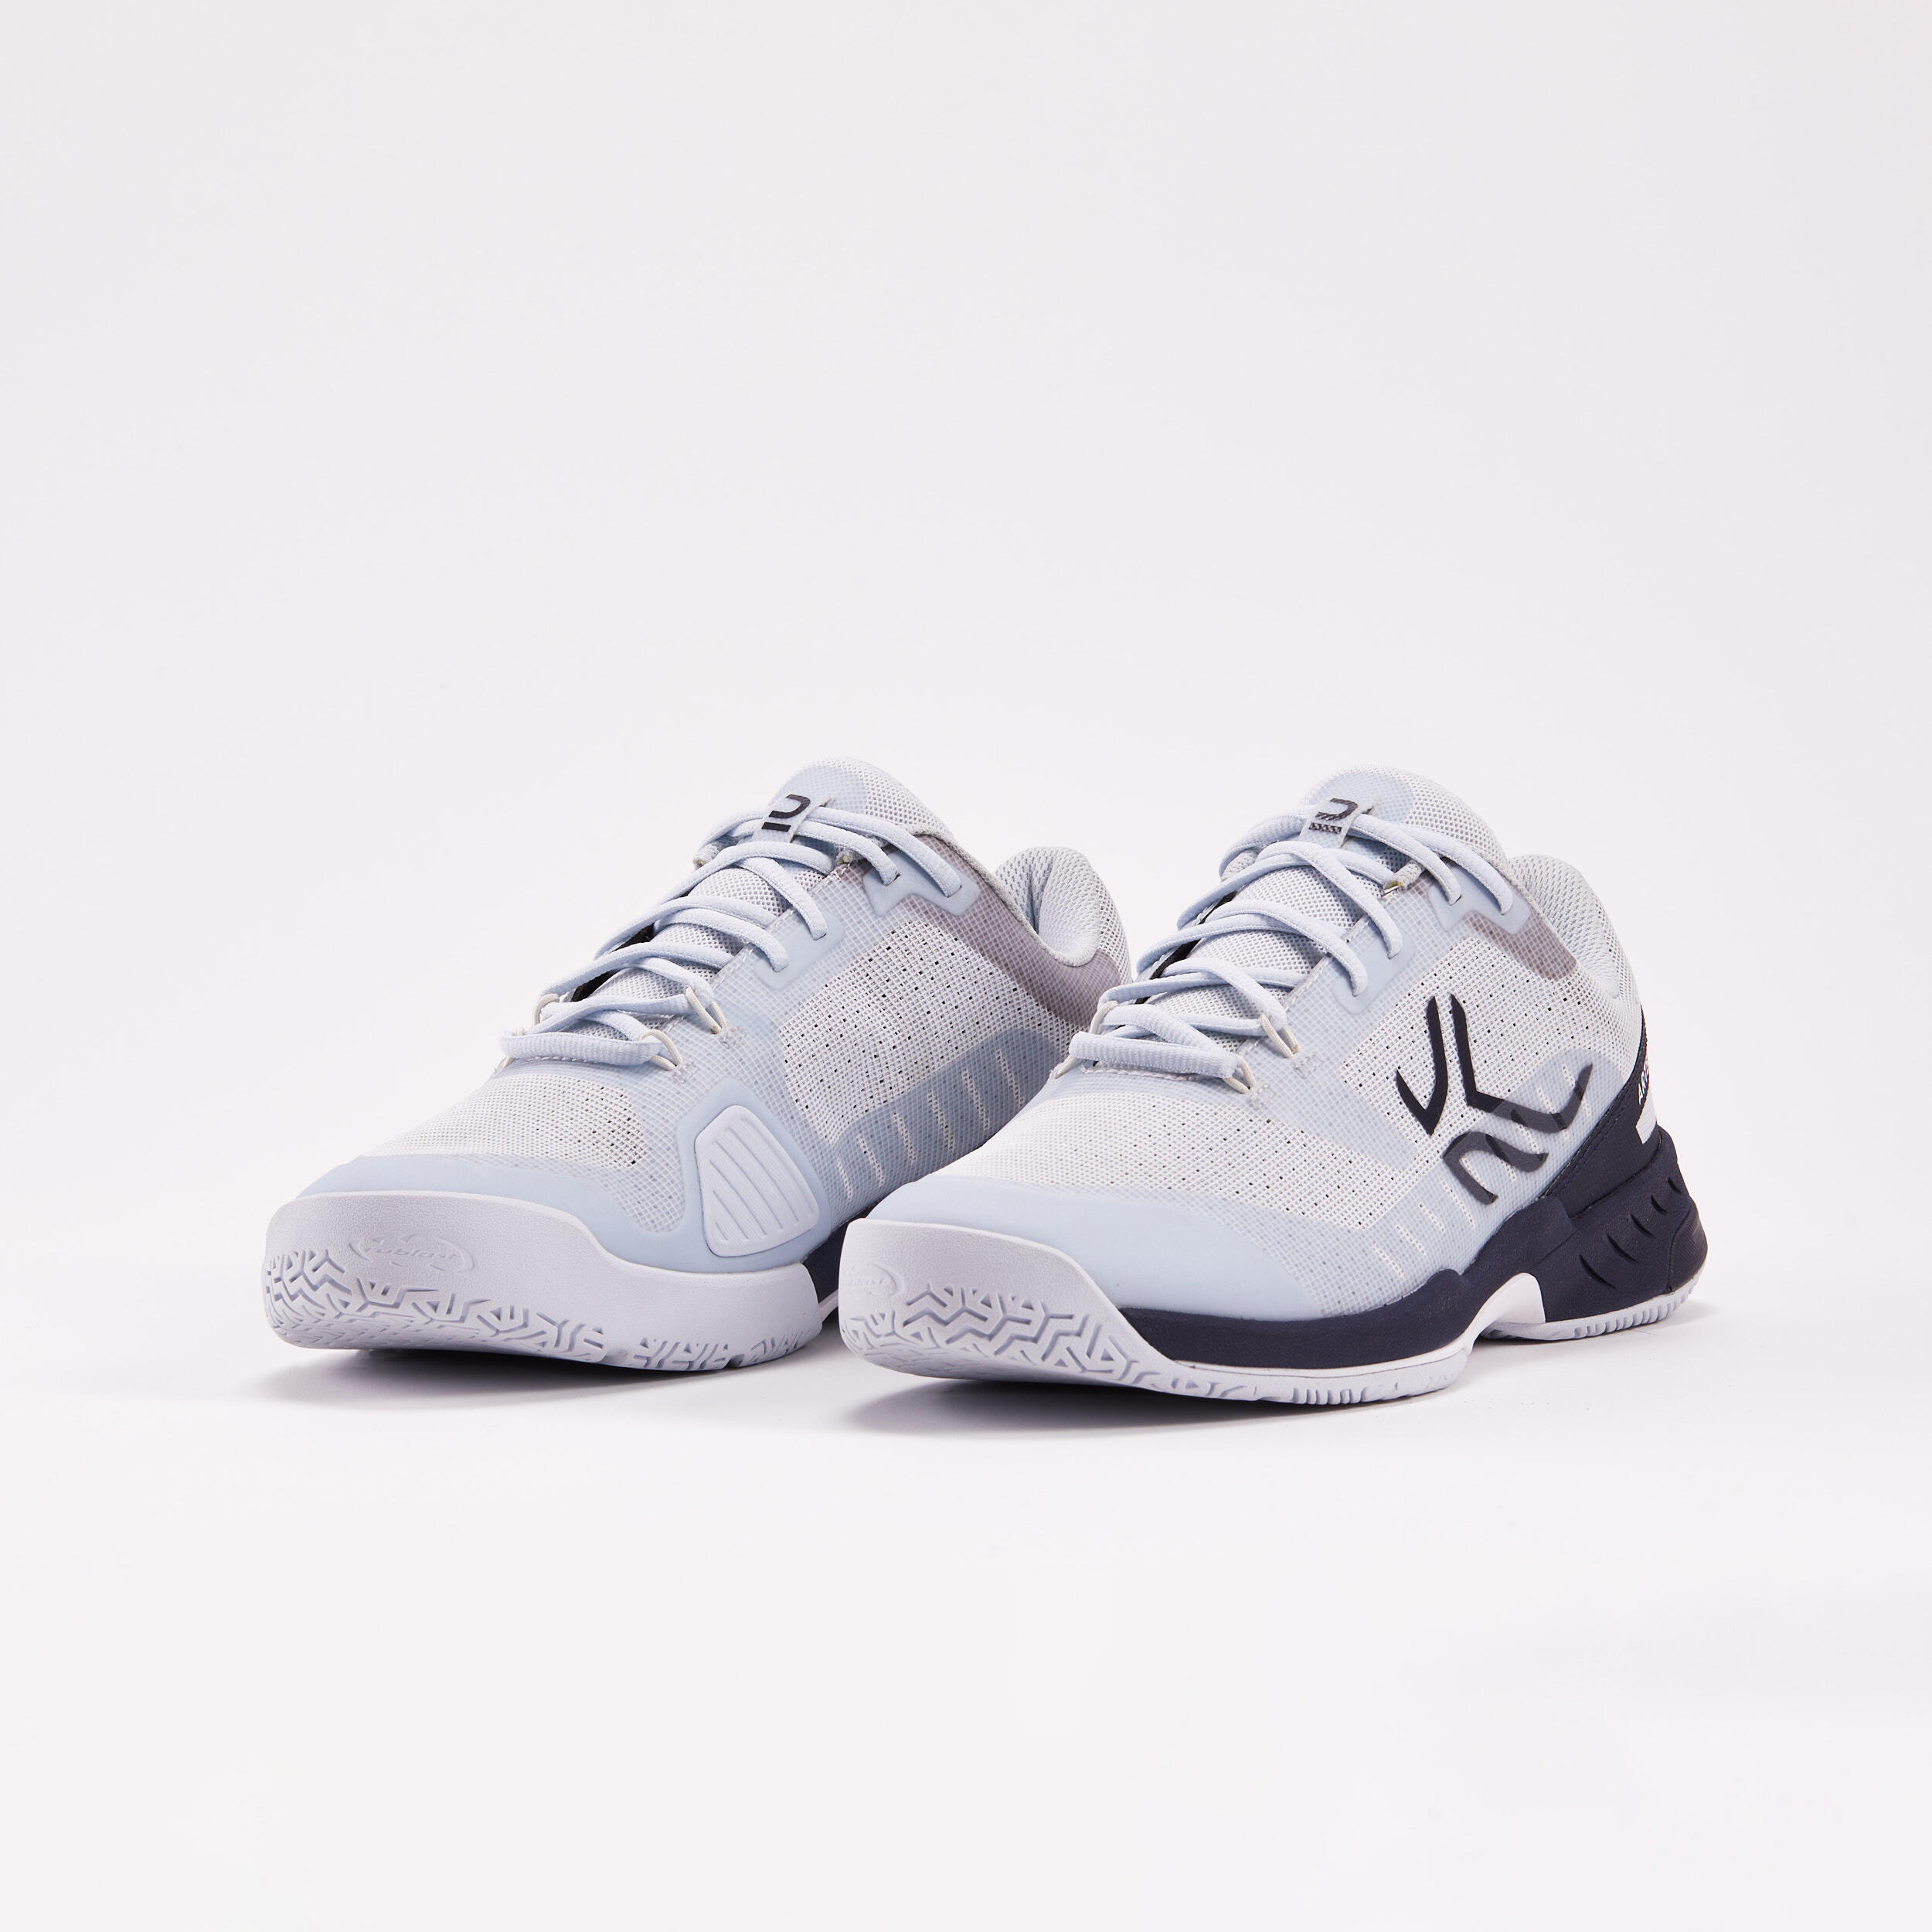 Men's Multicourt Tennis Shoes - Light Grey/Blue 5/9